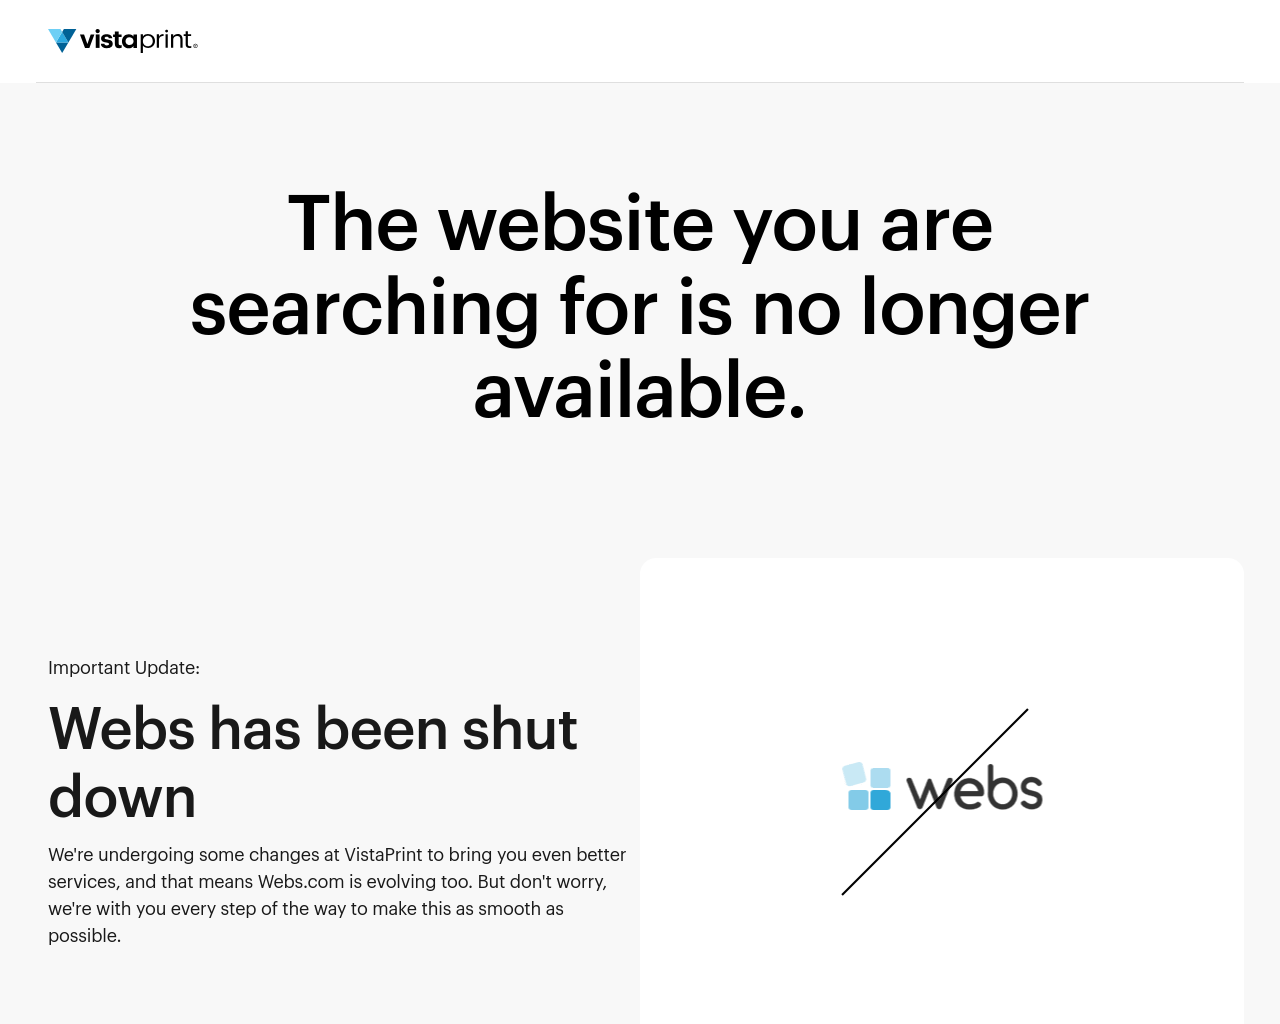 webs.com